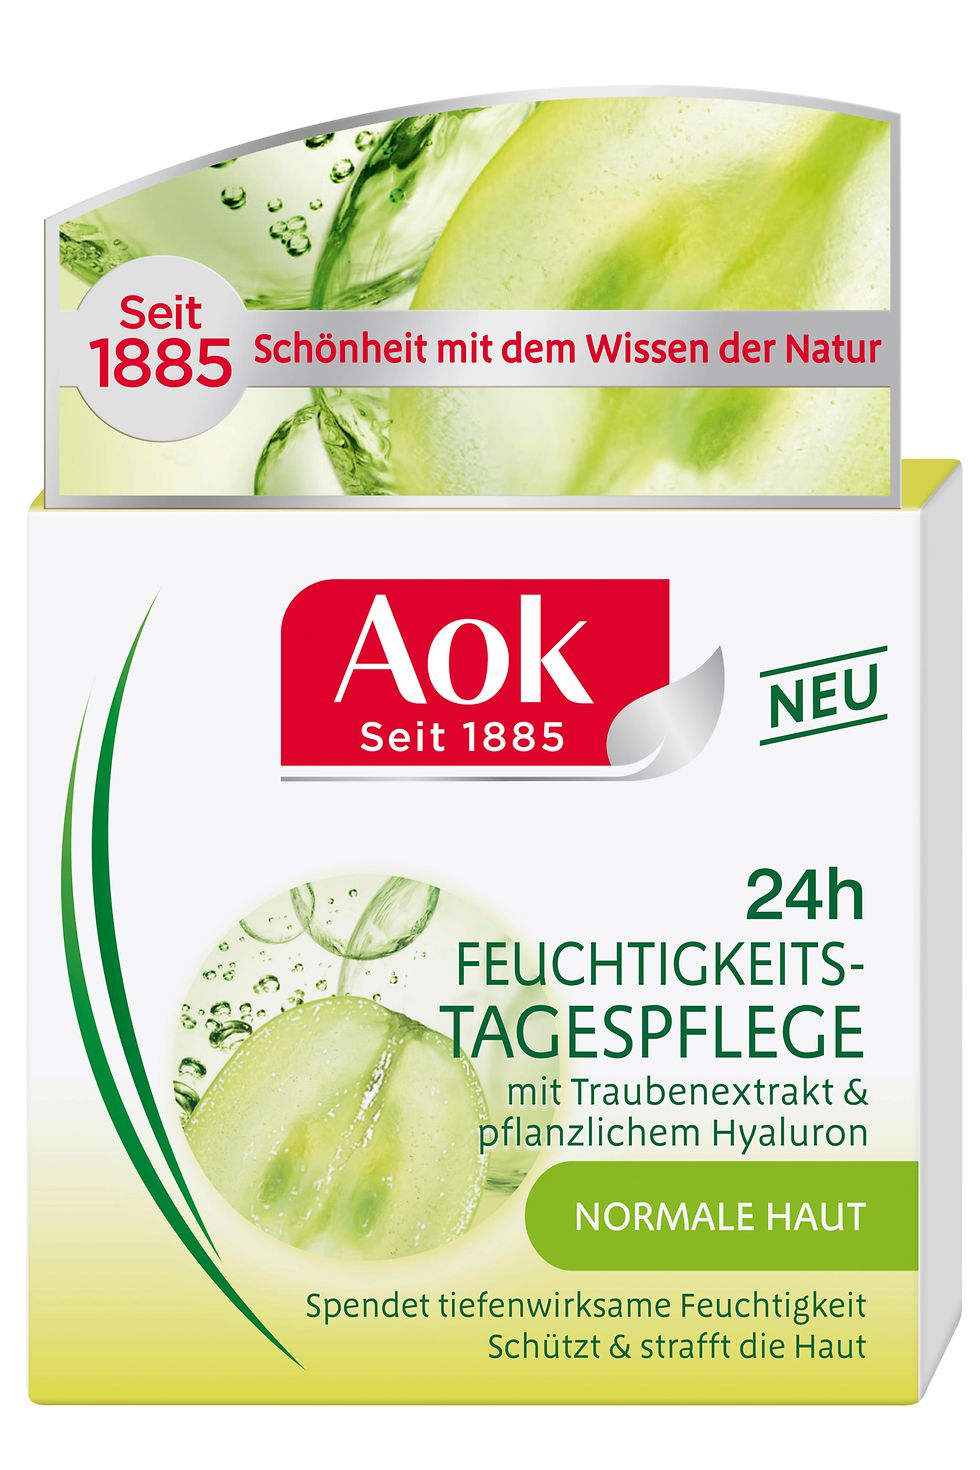 Aok 24h Feuchtigkeits-Tagespflege mit Traubenextrakt & pflanzlichem Hyaluron